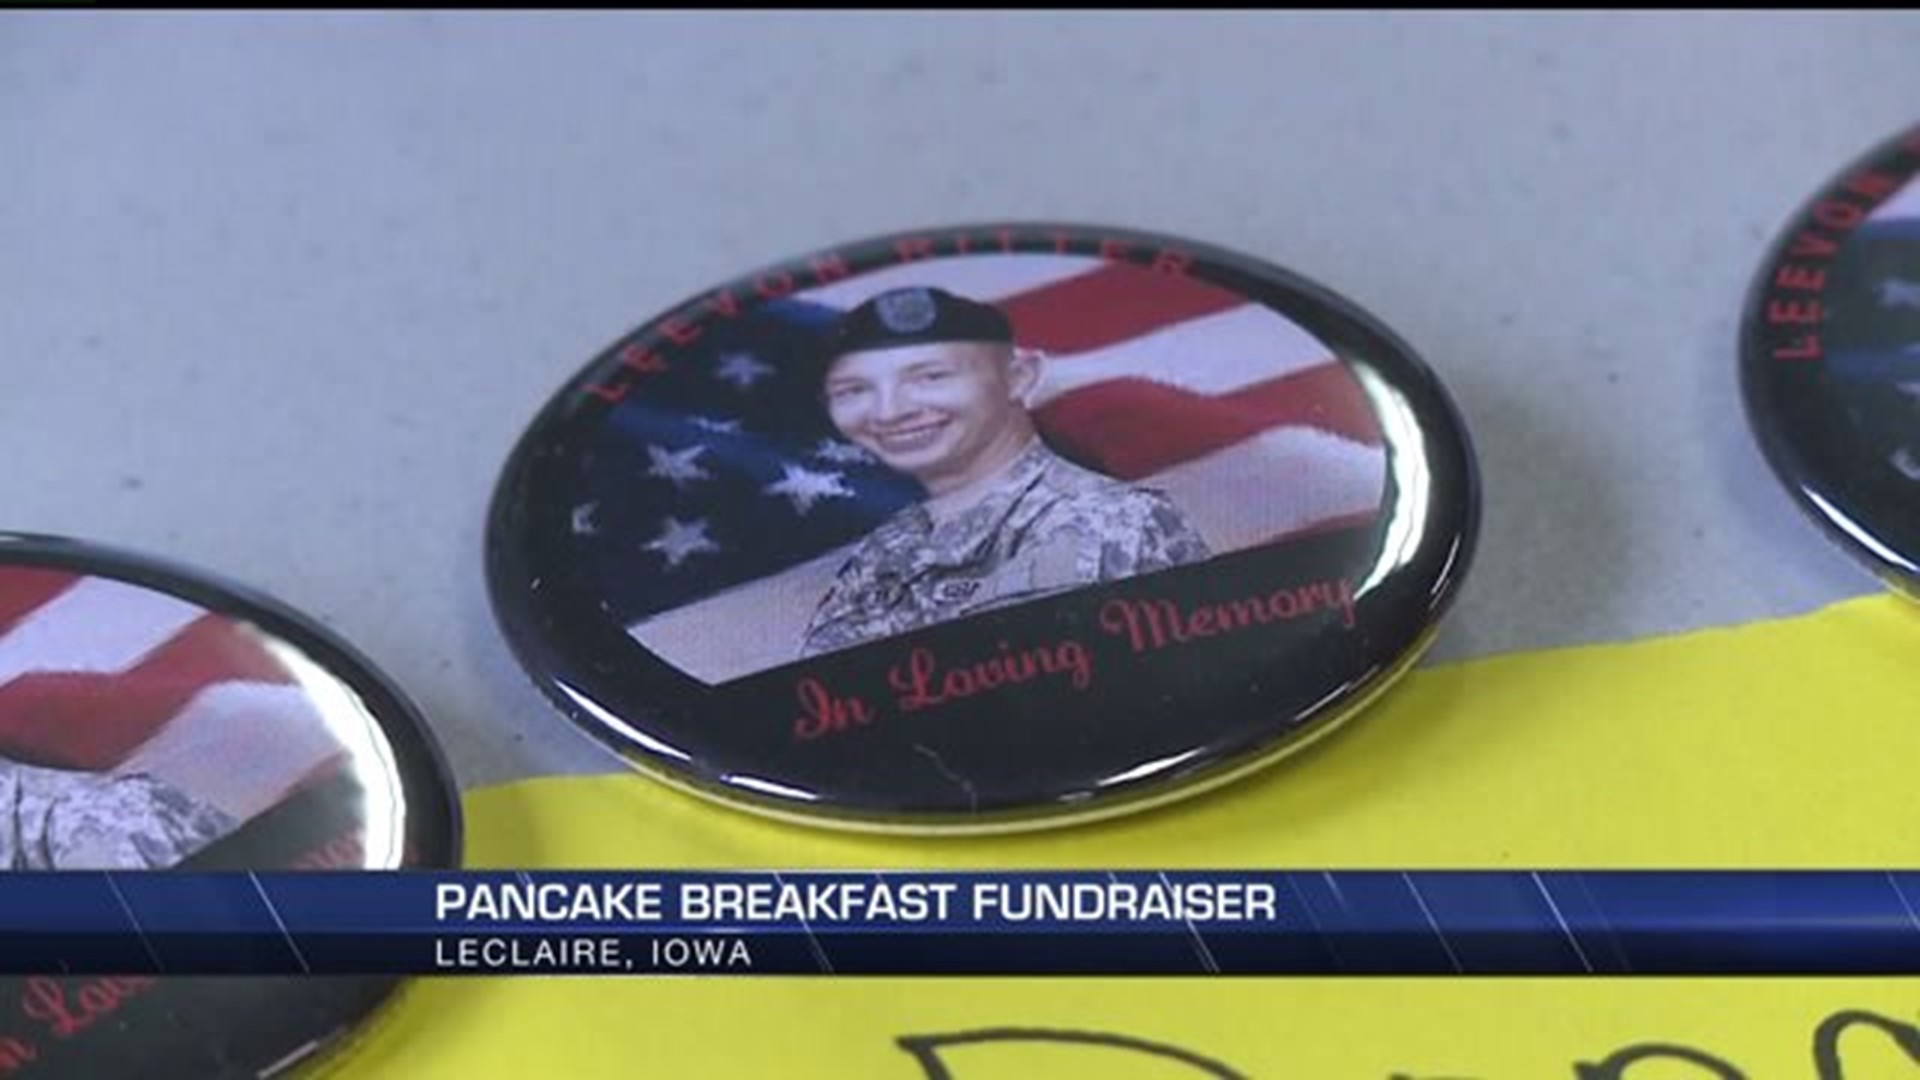 Pancake breakfast fundraiser